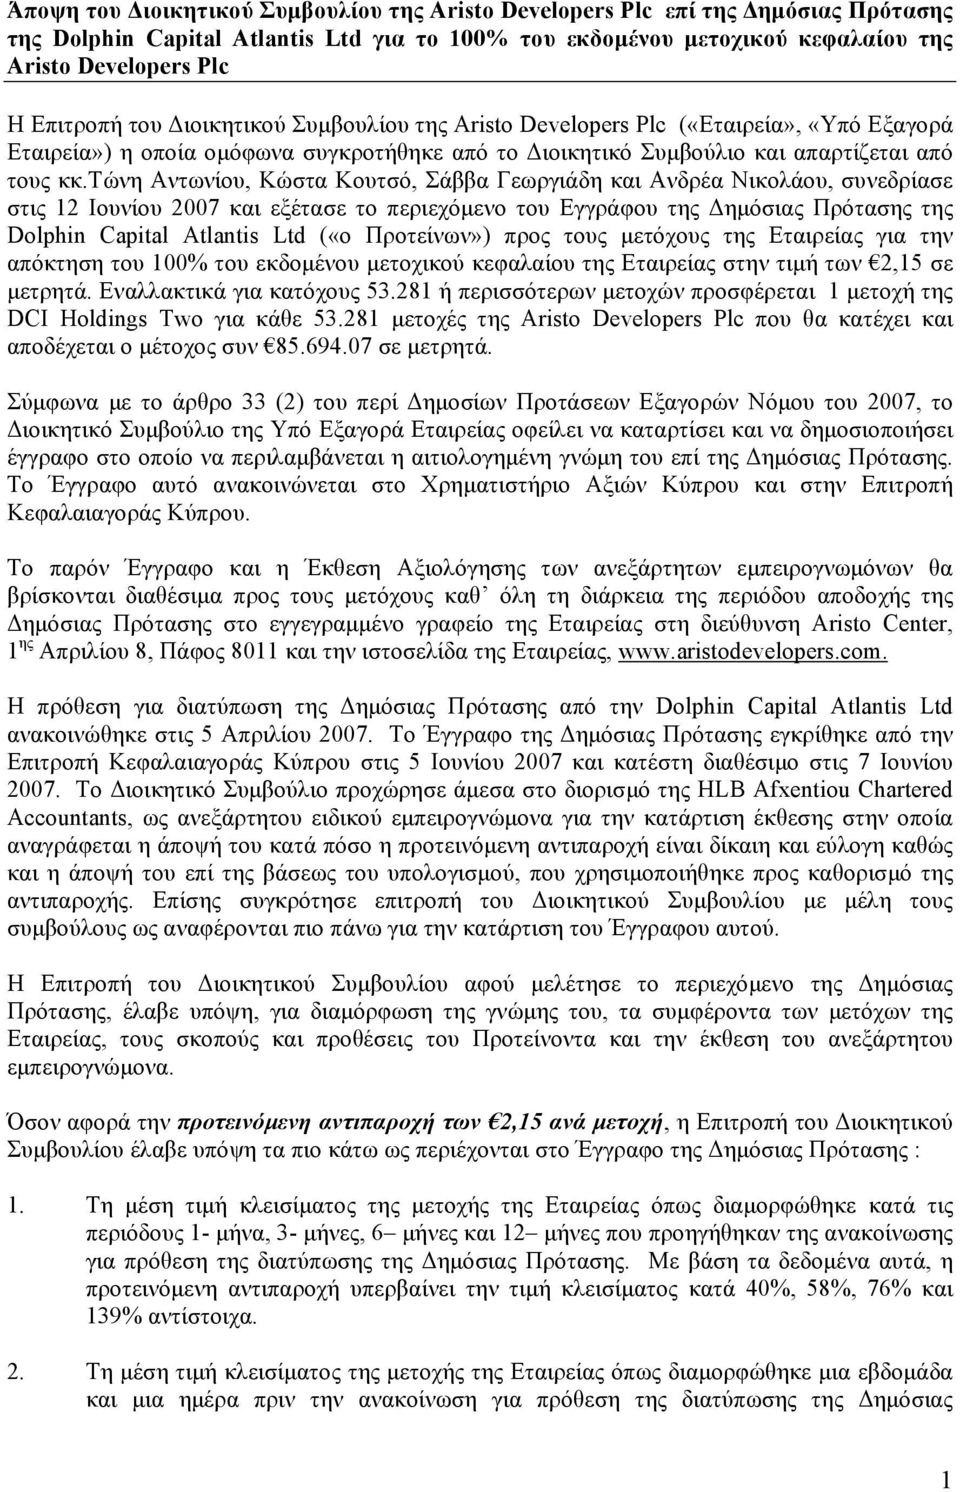 τώνη Αντωνίου, Κώστα Κουτσό, Σάββα Γεωργιάδη και Ανδρέα Νικολάου, συνεδρίασε στις 12 Ιουνίου 2007 και εξέτασε το περιεχόμενο του Εγγράφου της Δημόσιας Πρότασης της Dolphin Capital Atlantis Ltd («o